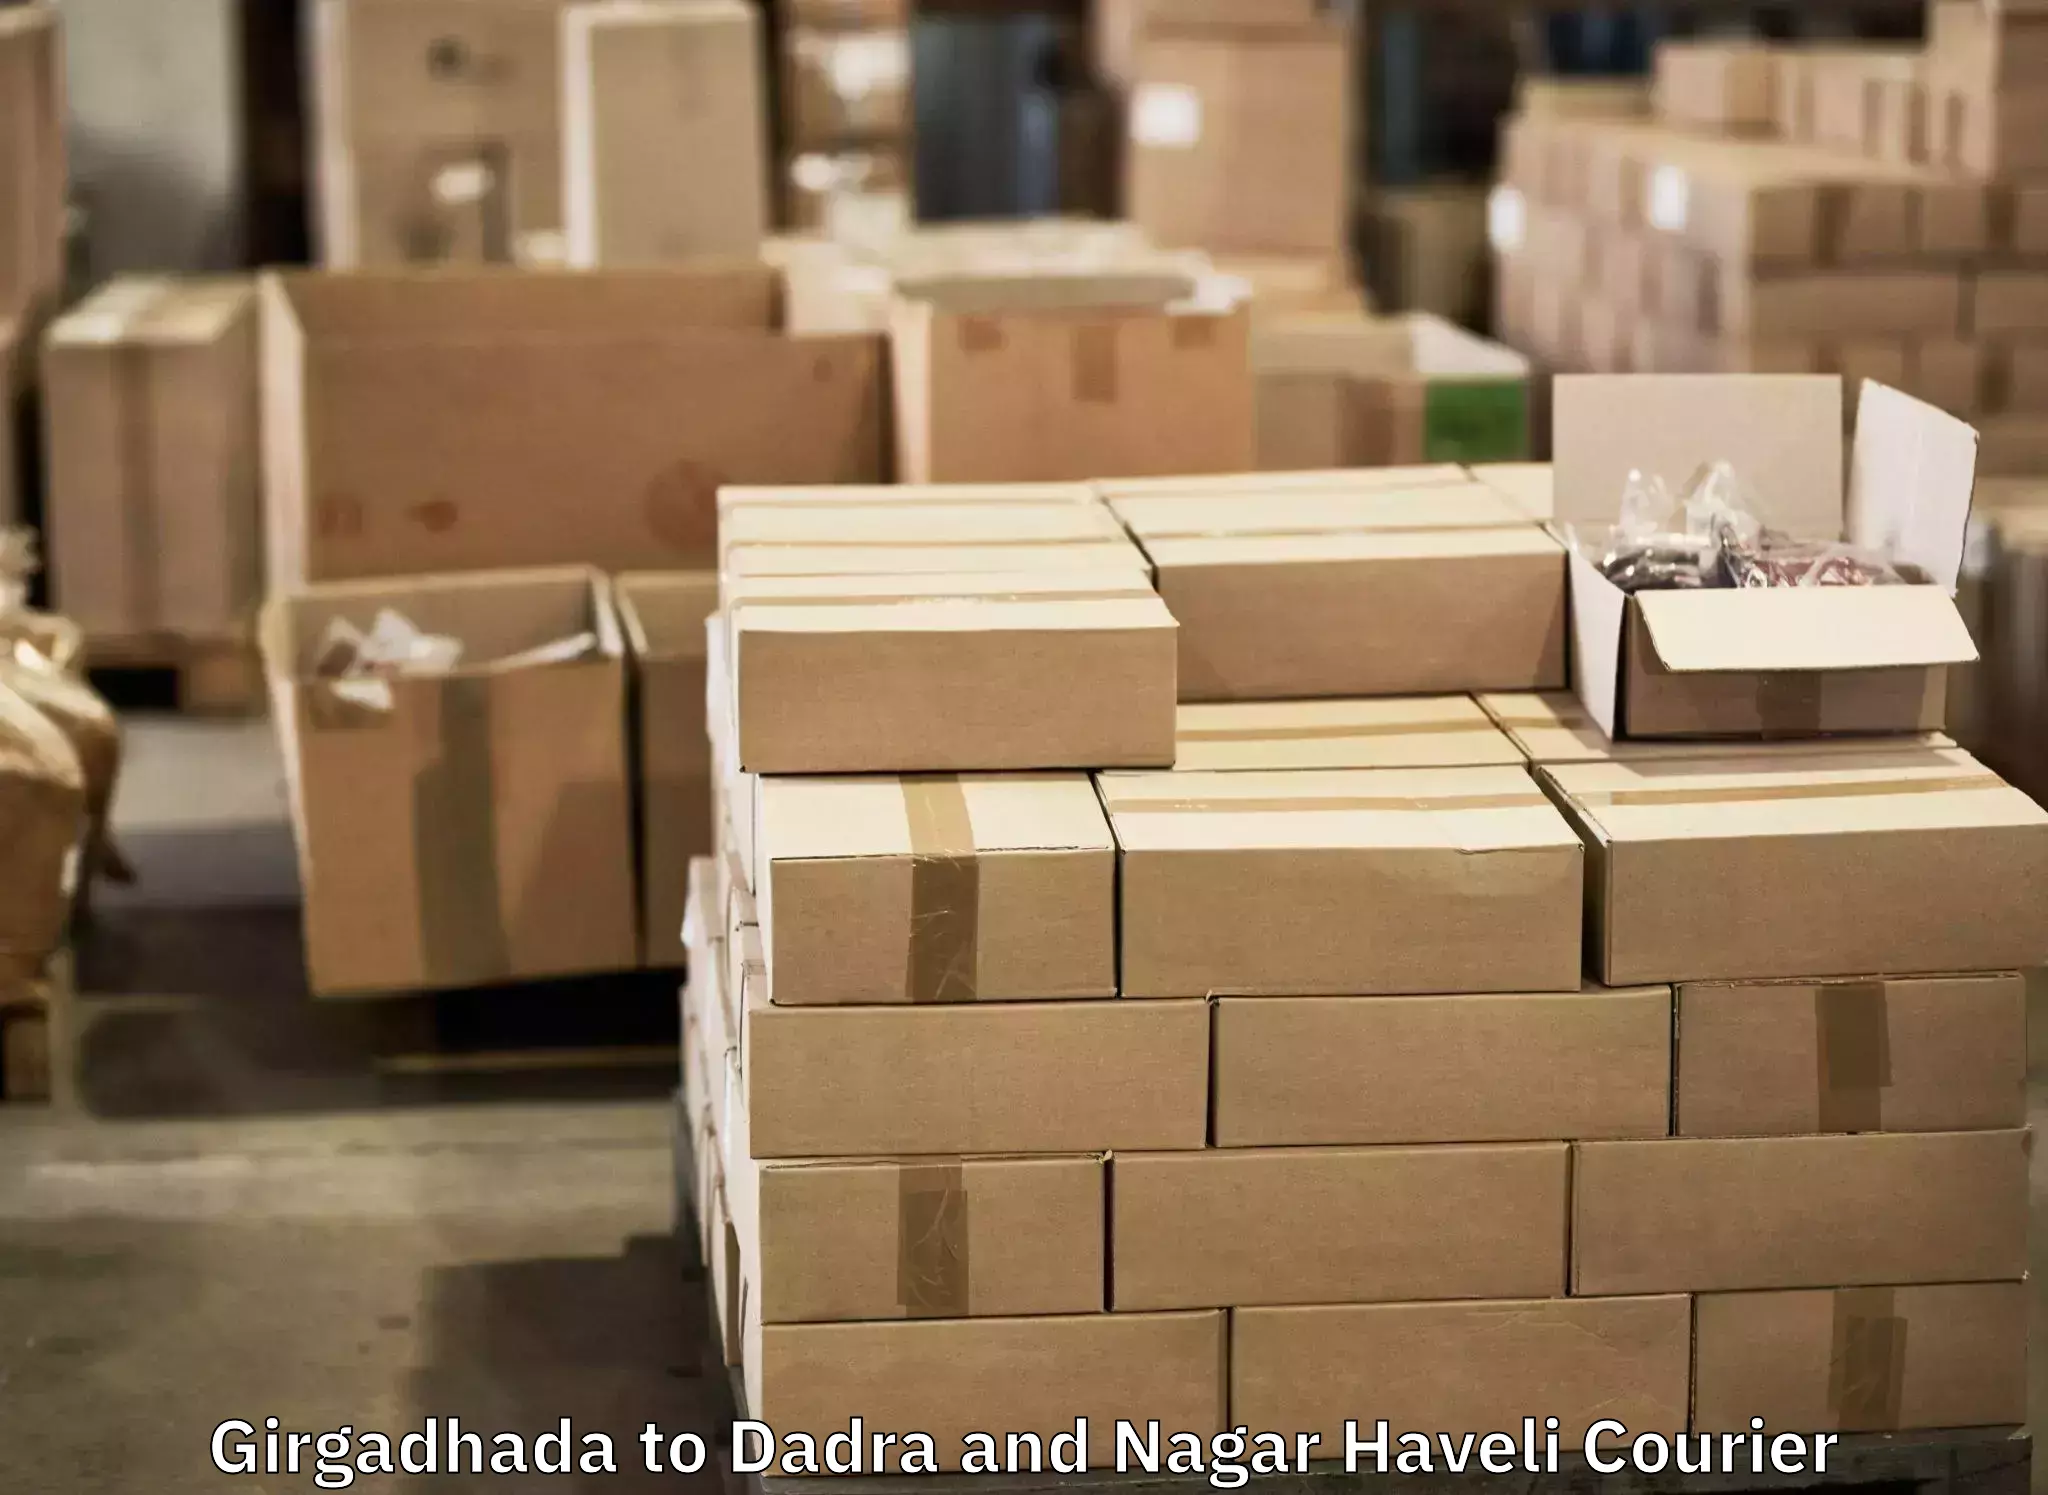 Baggage courier guide Girgadhada to Dadra and Nagar Haveli